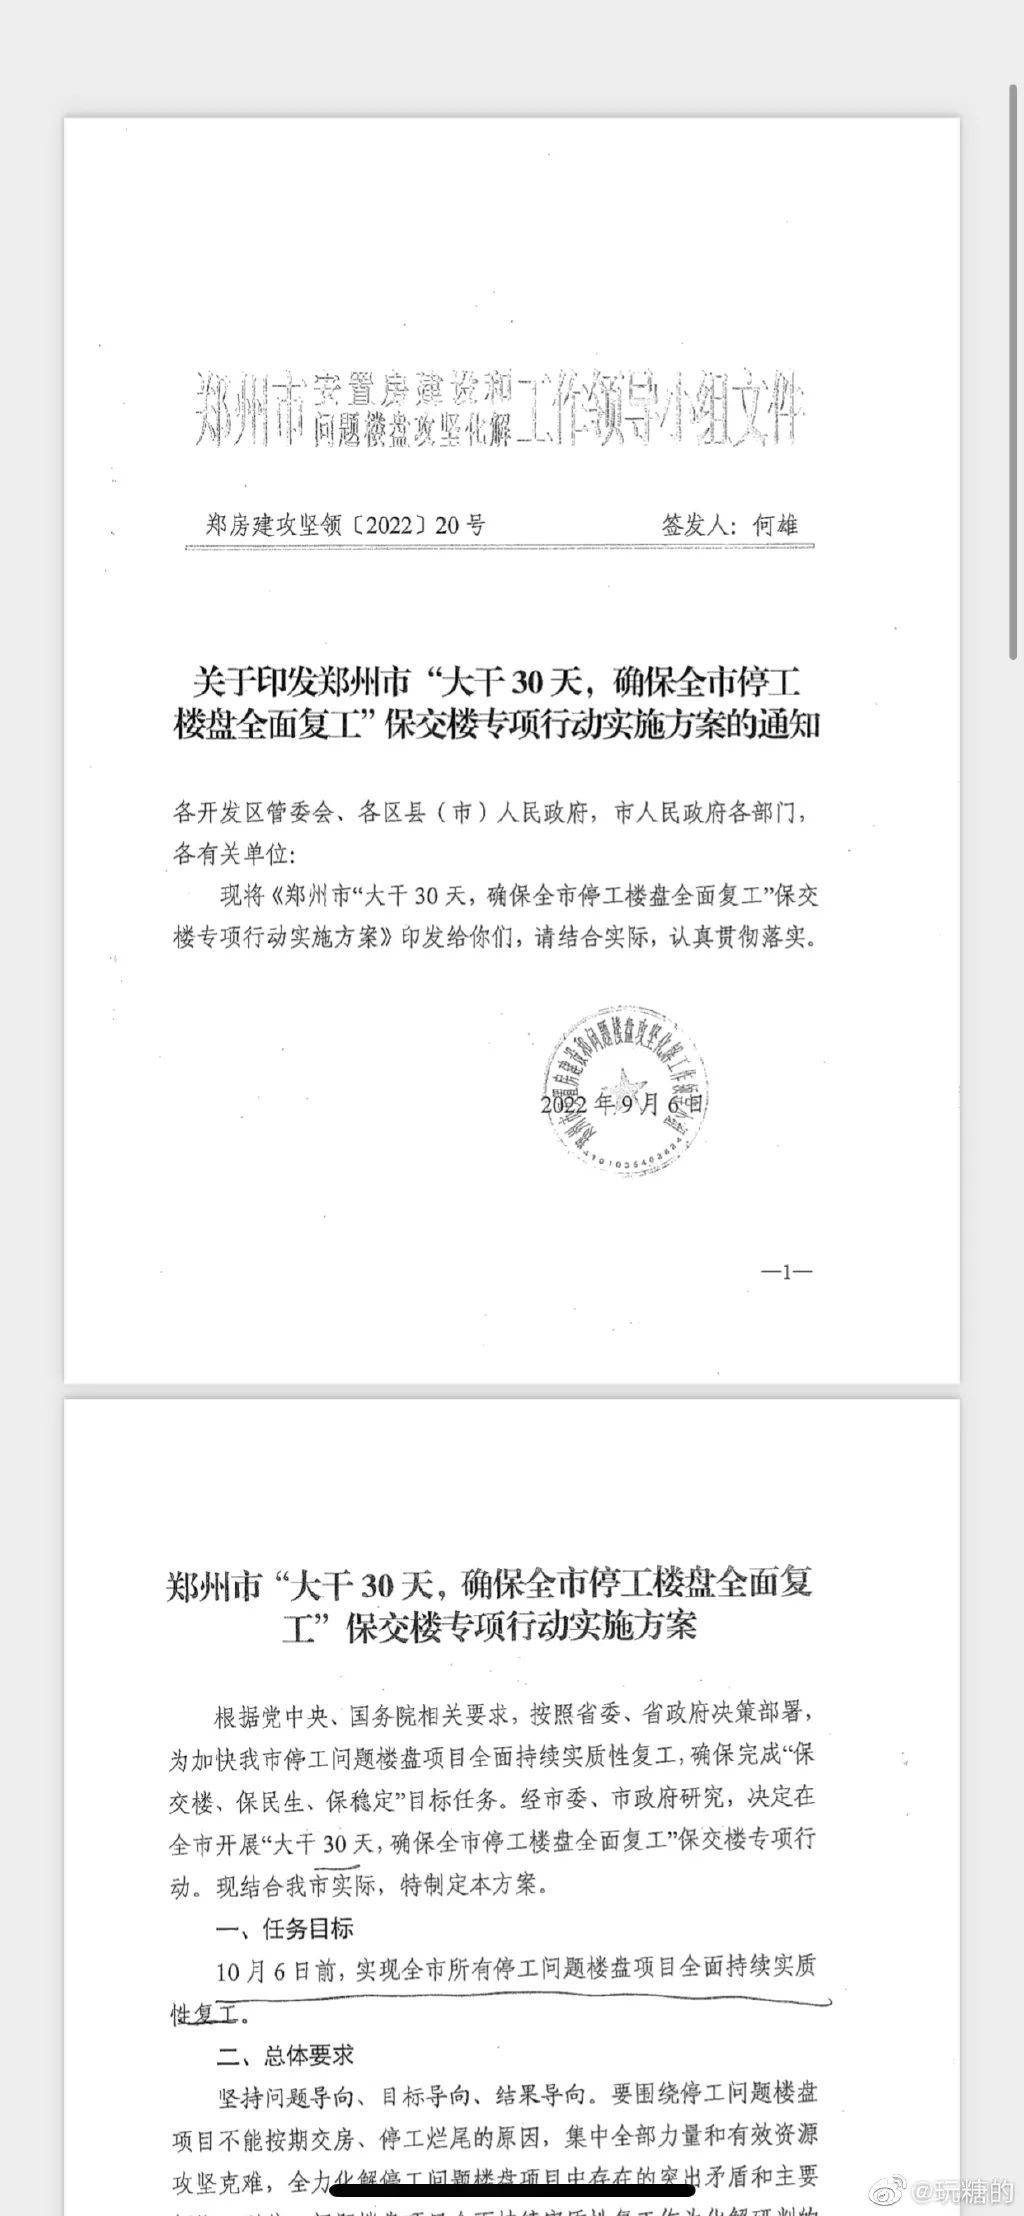 郑州明日召开“房地产开发企业瘦身自救行动”部署会